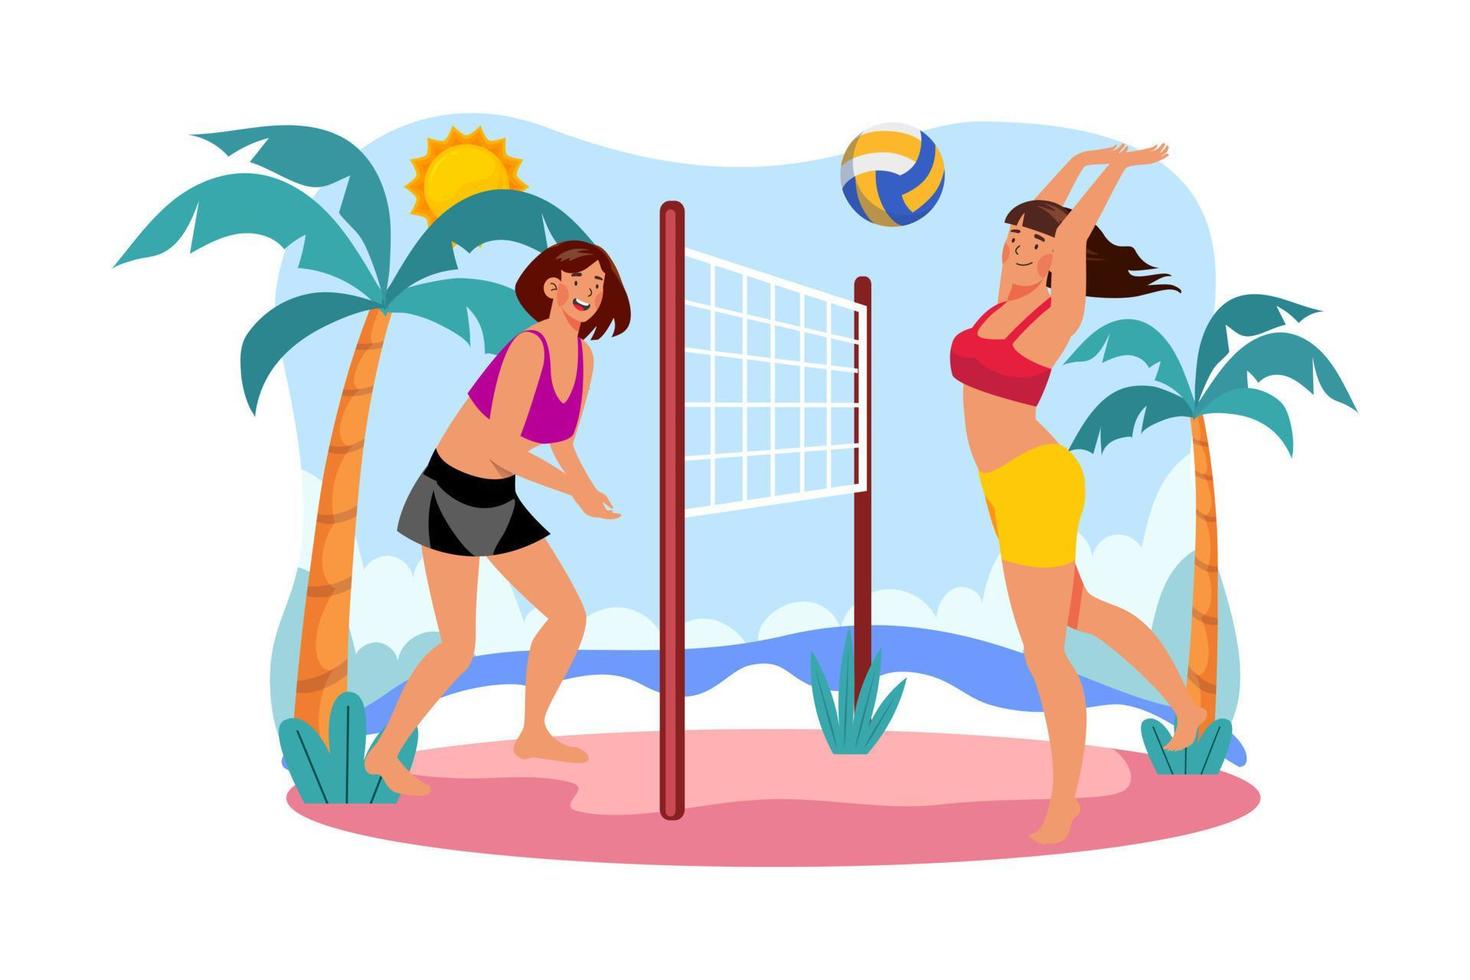 niña jugando voleibol de playa concepto de ilustración sobre fondo blanco vector